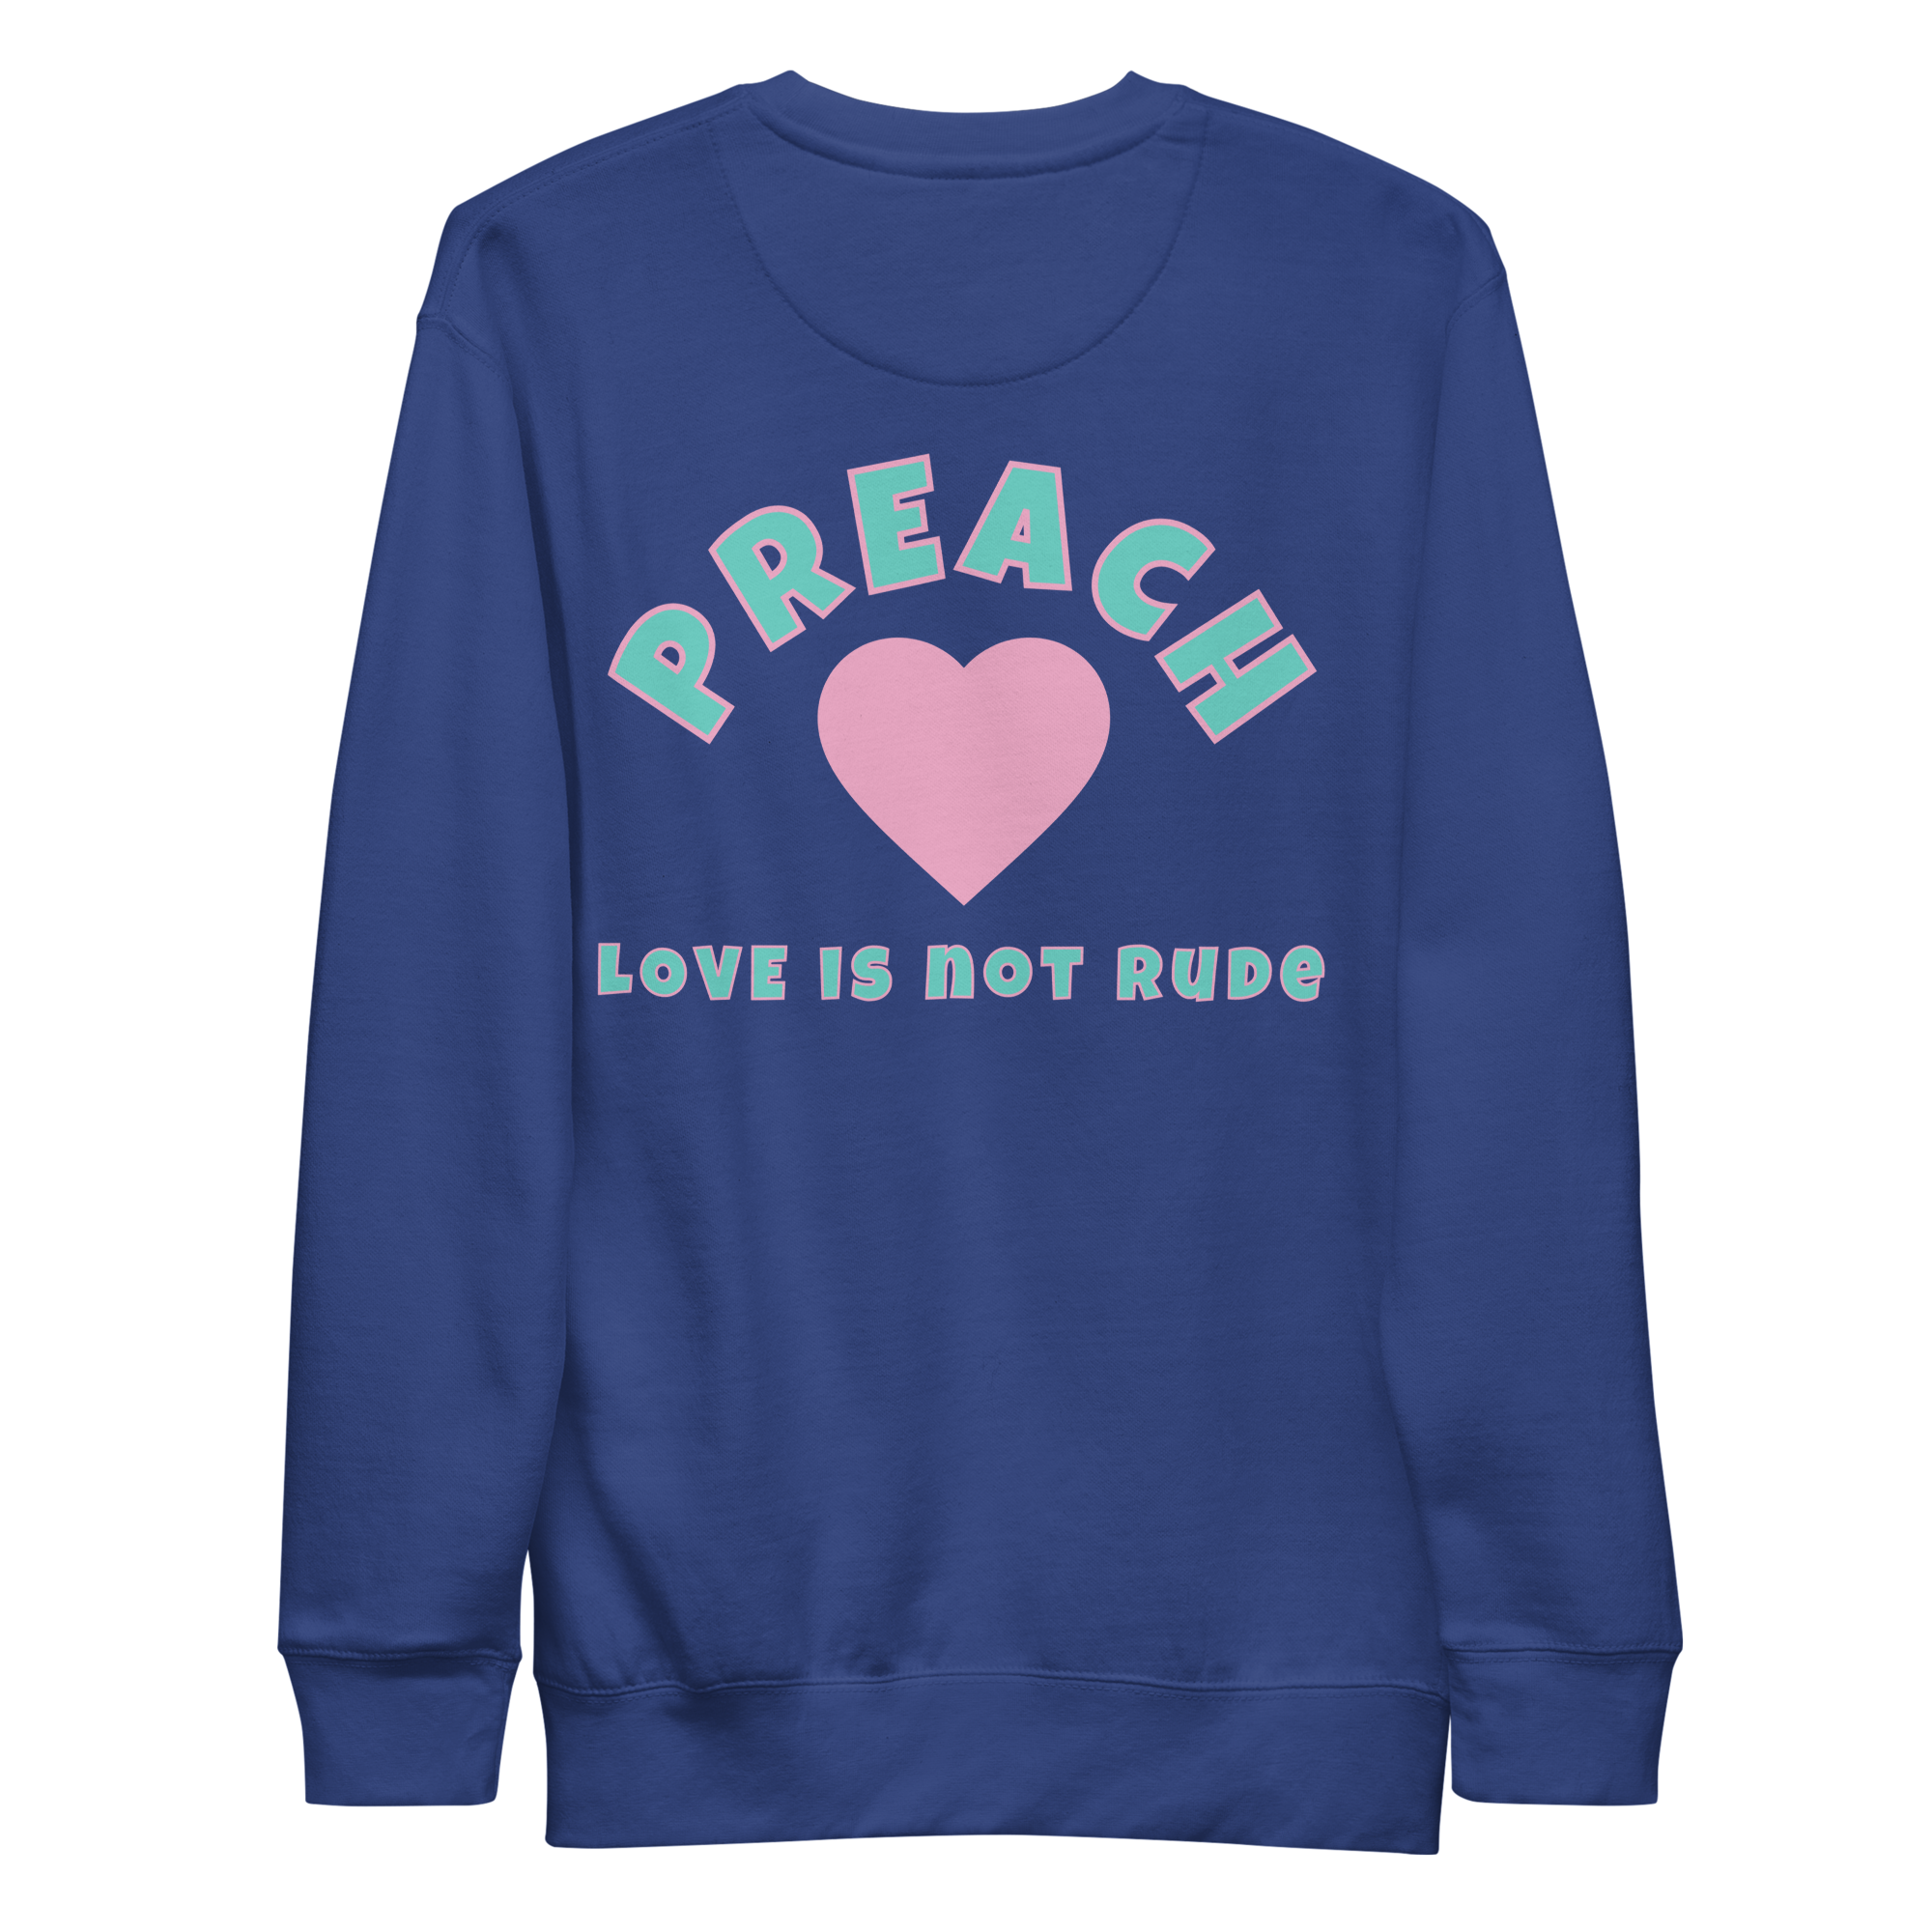 Love never fails Unisex Premium Sweatshirt